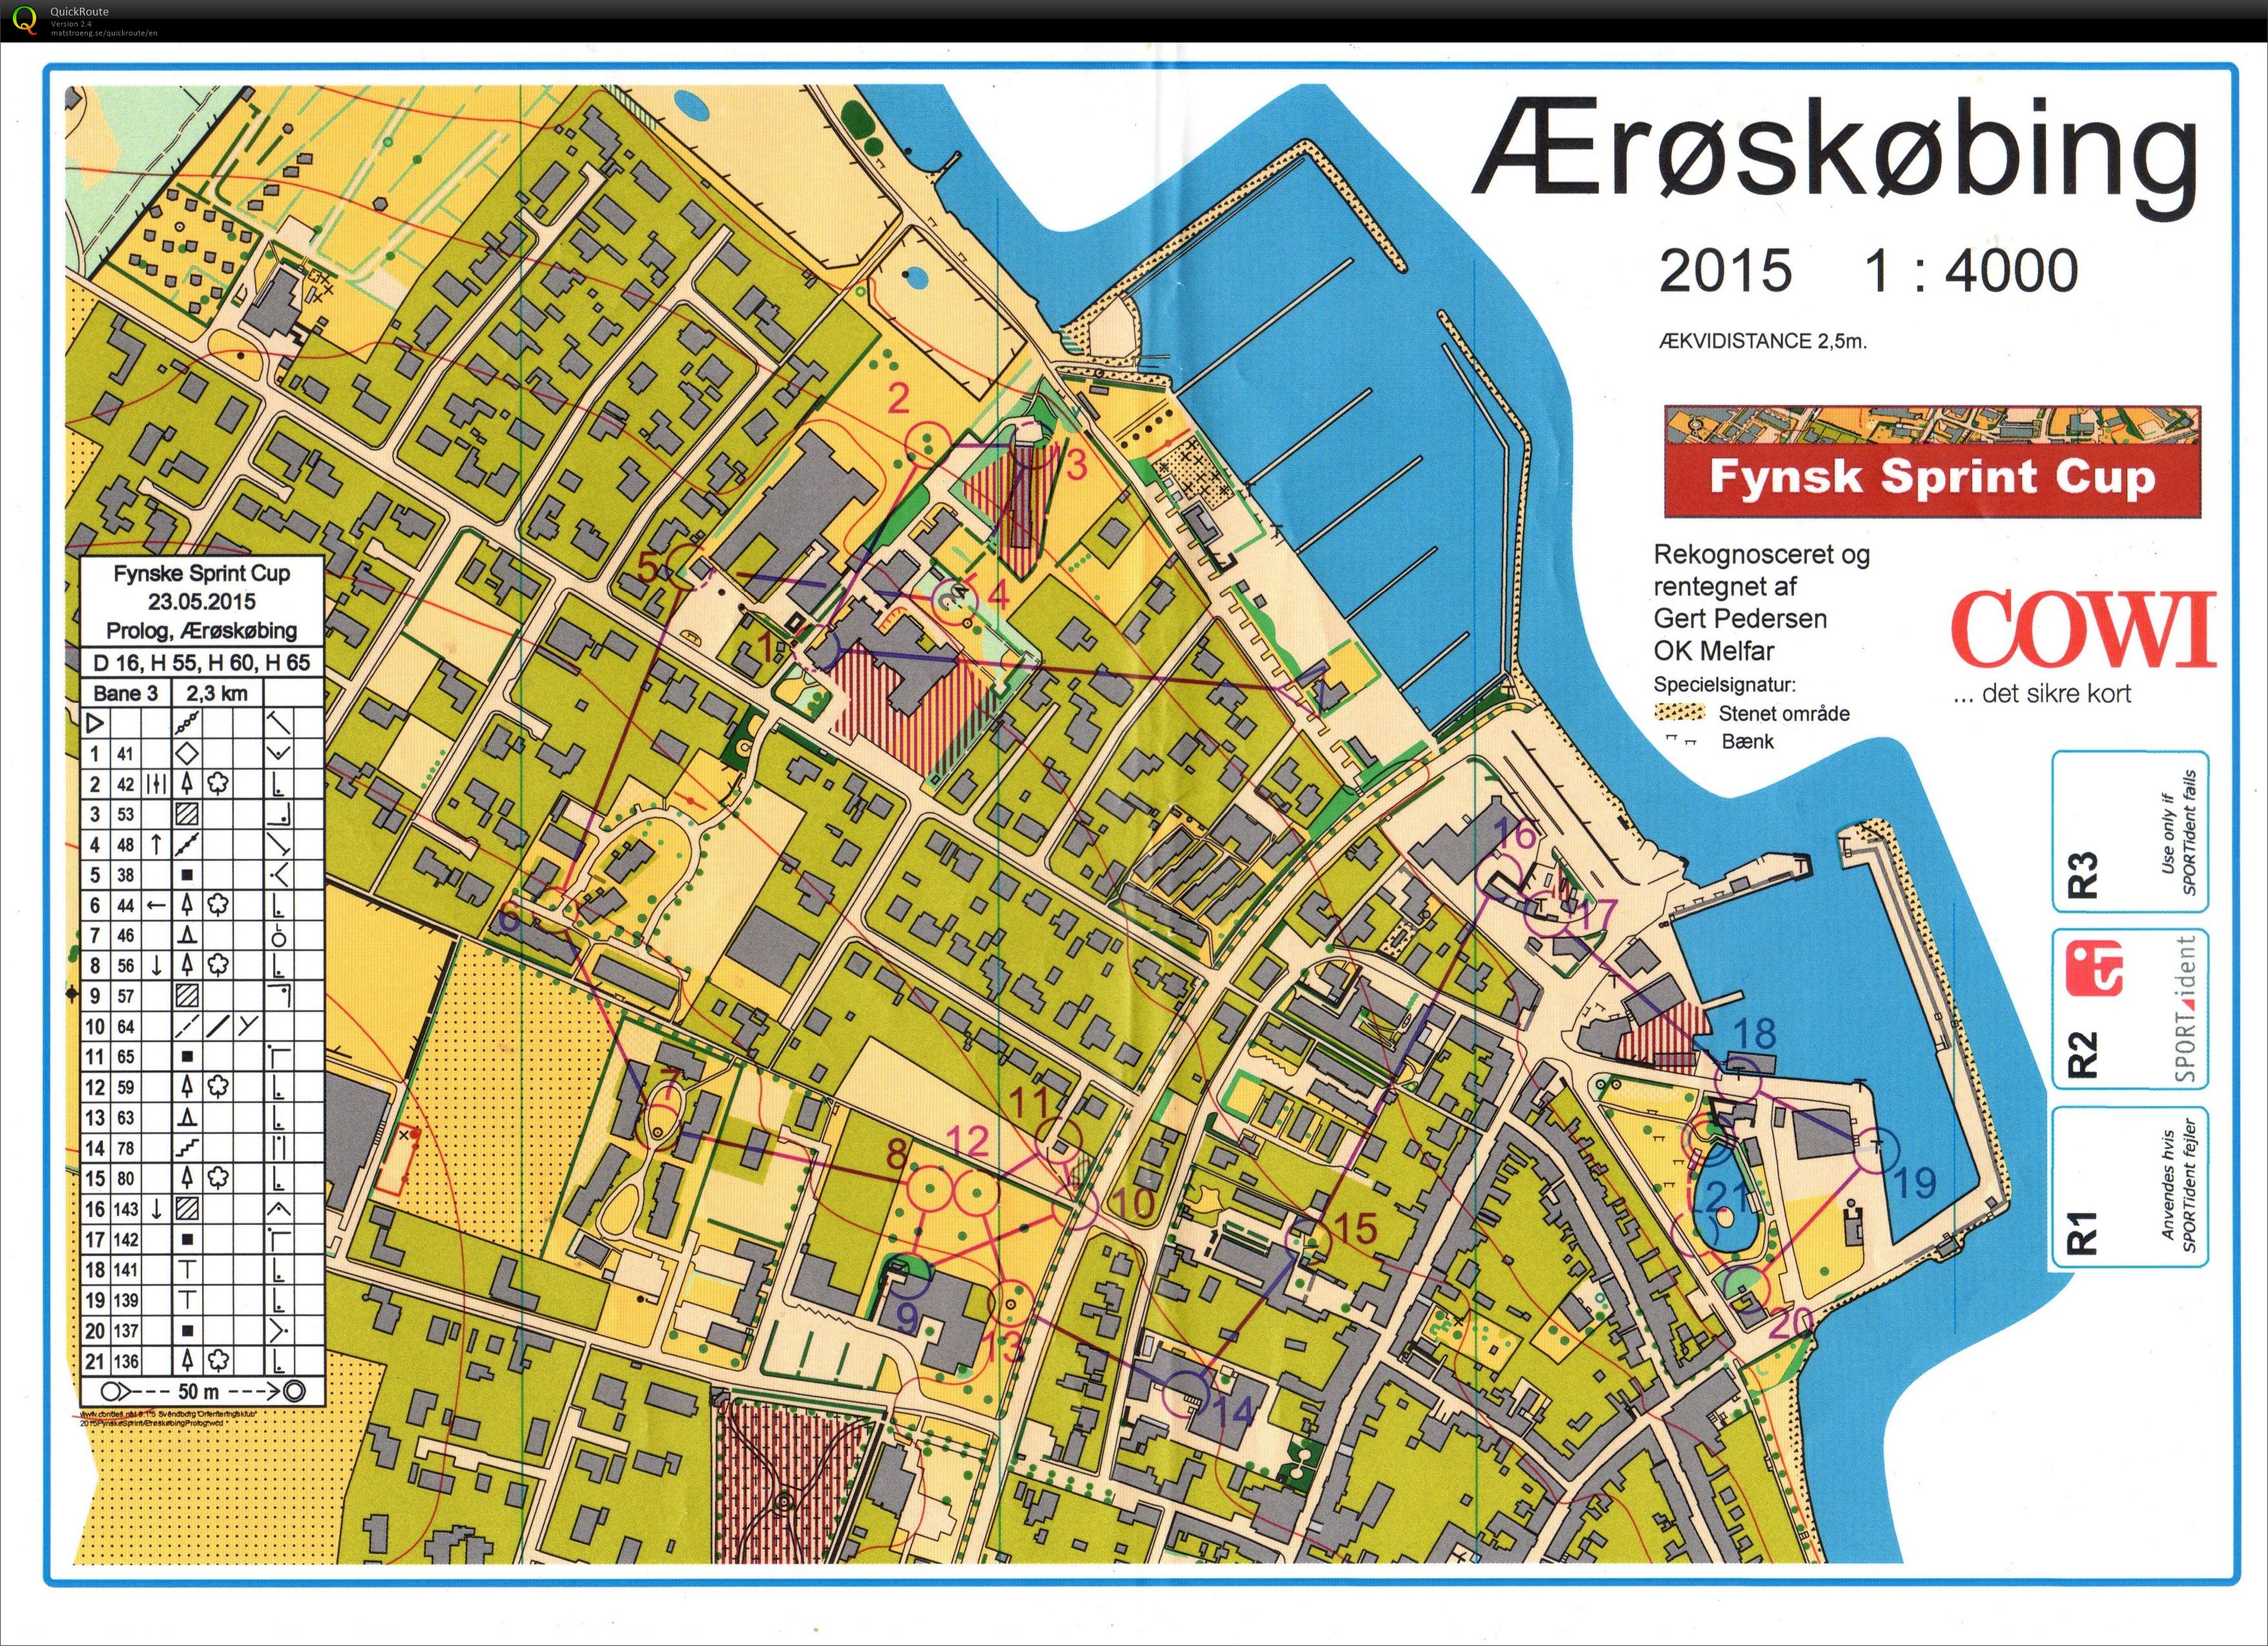 Fynsk Sprint Cup - prolog1 (23/05/2015)